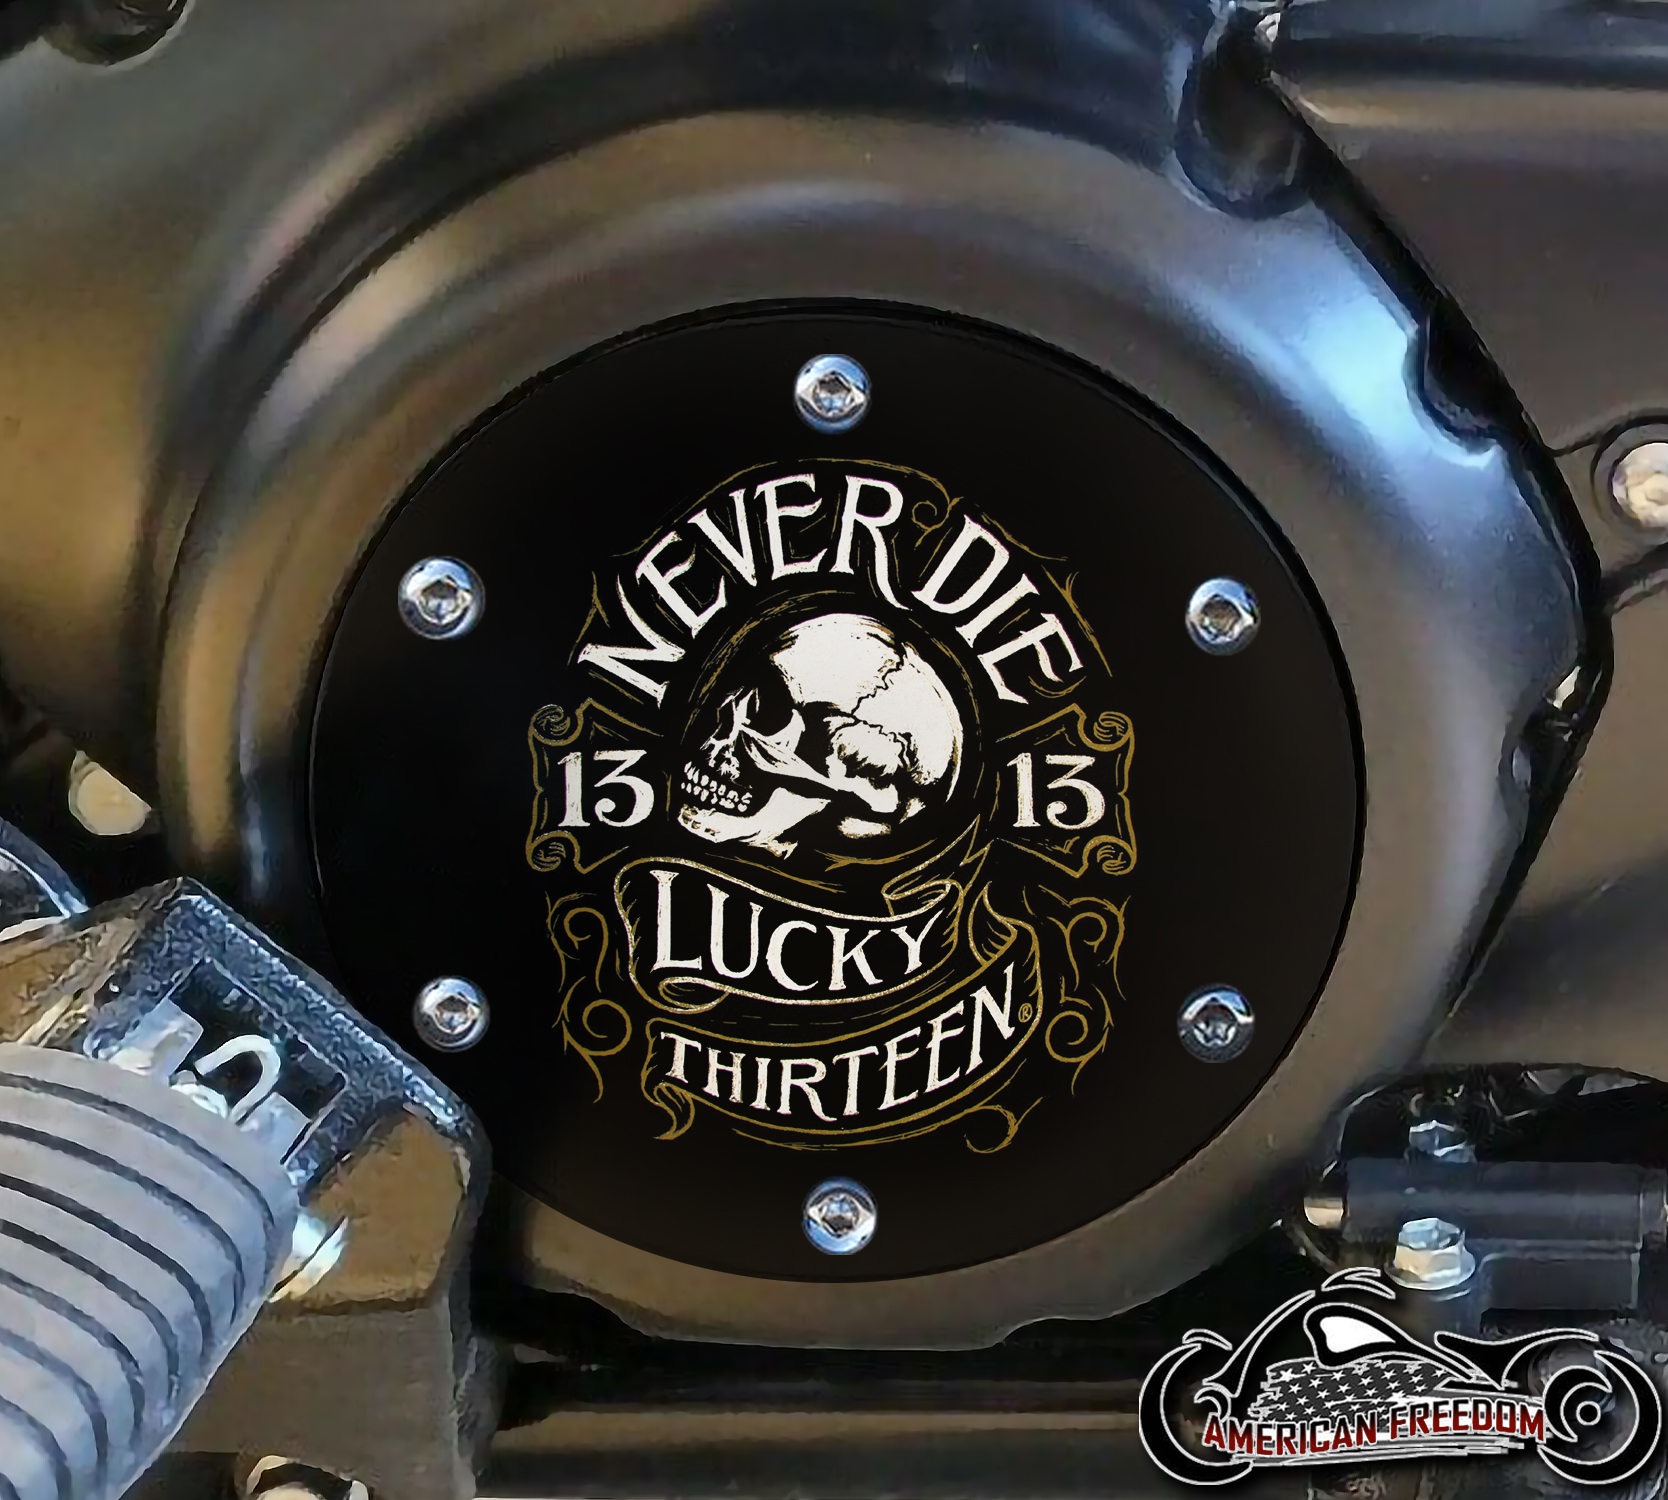 SUZUKI M109R Derby/Engine Cover - Never Die Lucky 13